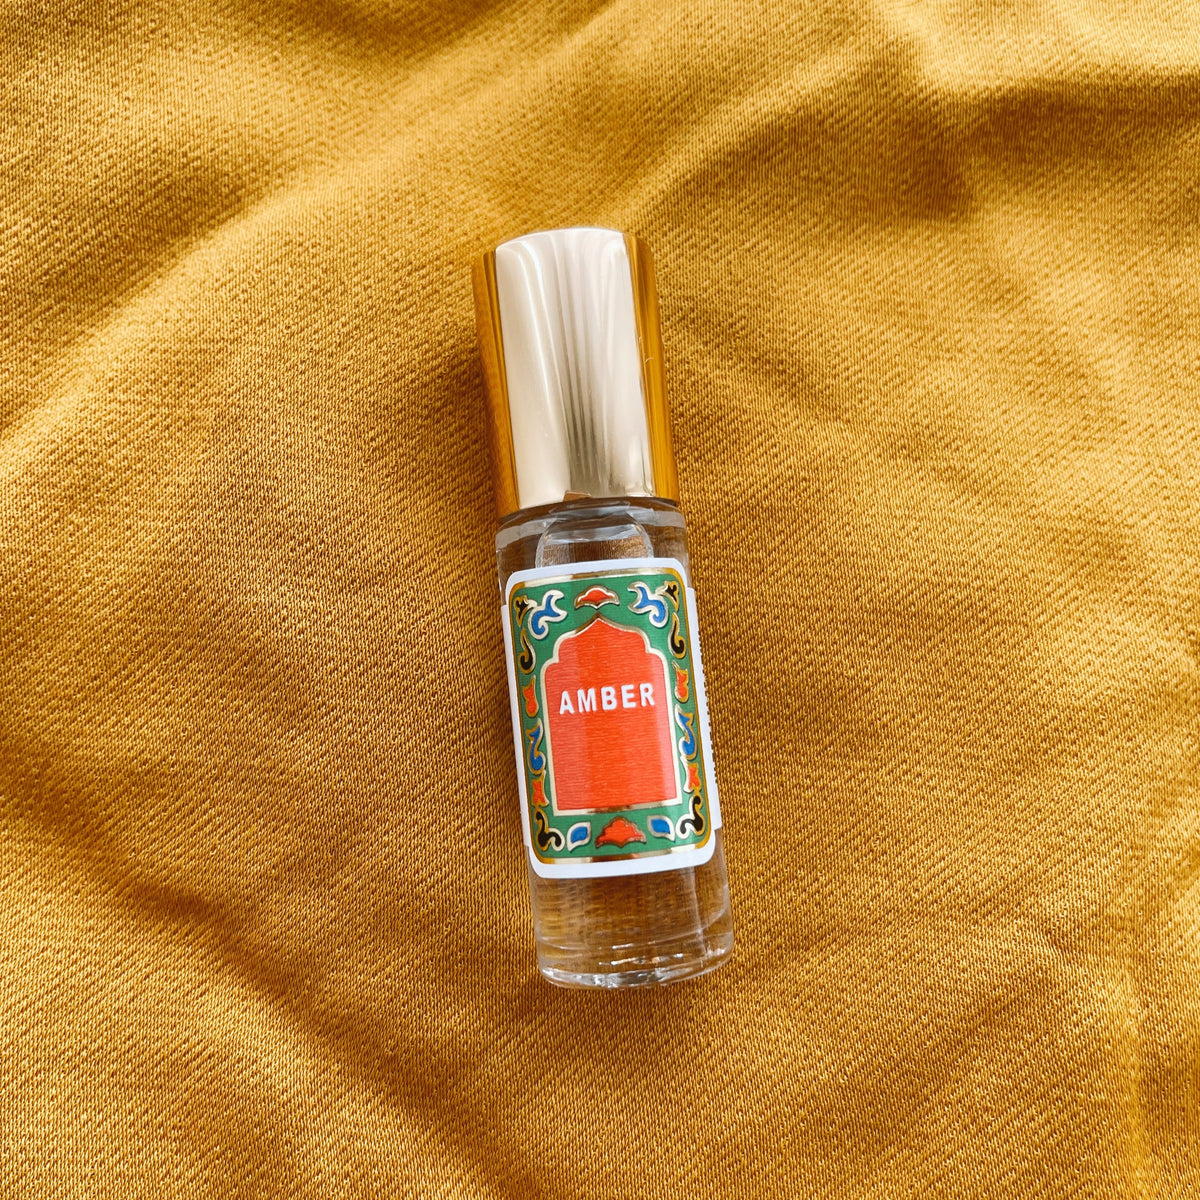 Nemat Amber Fragrance 5ml Roll On – MAISON 4110